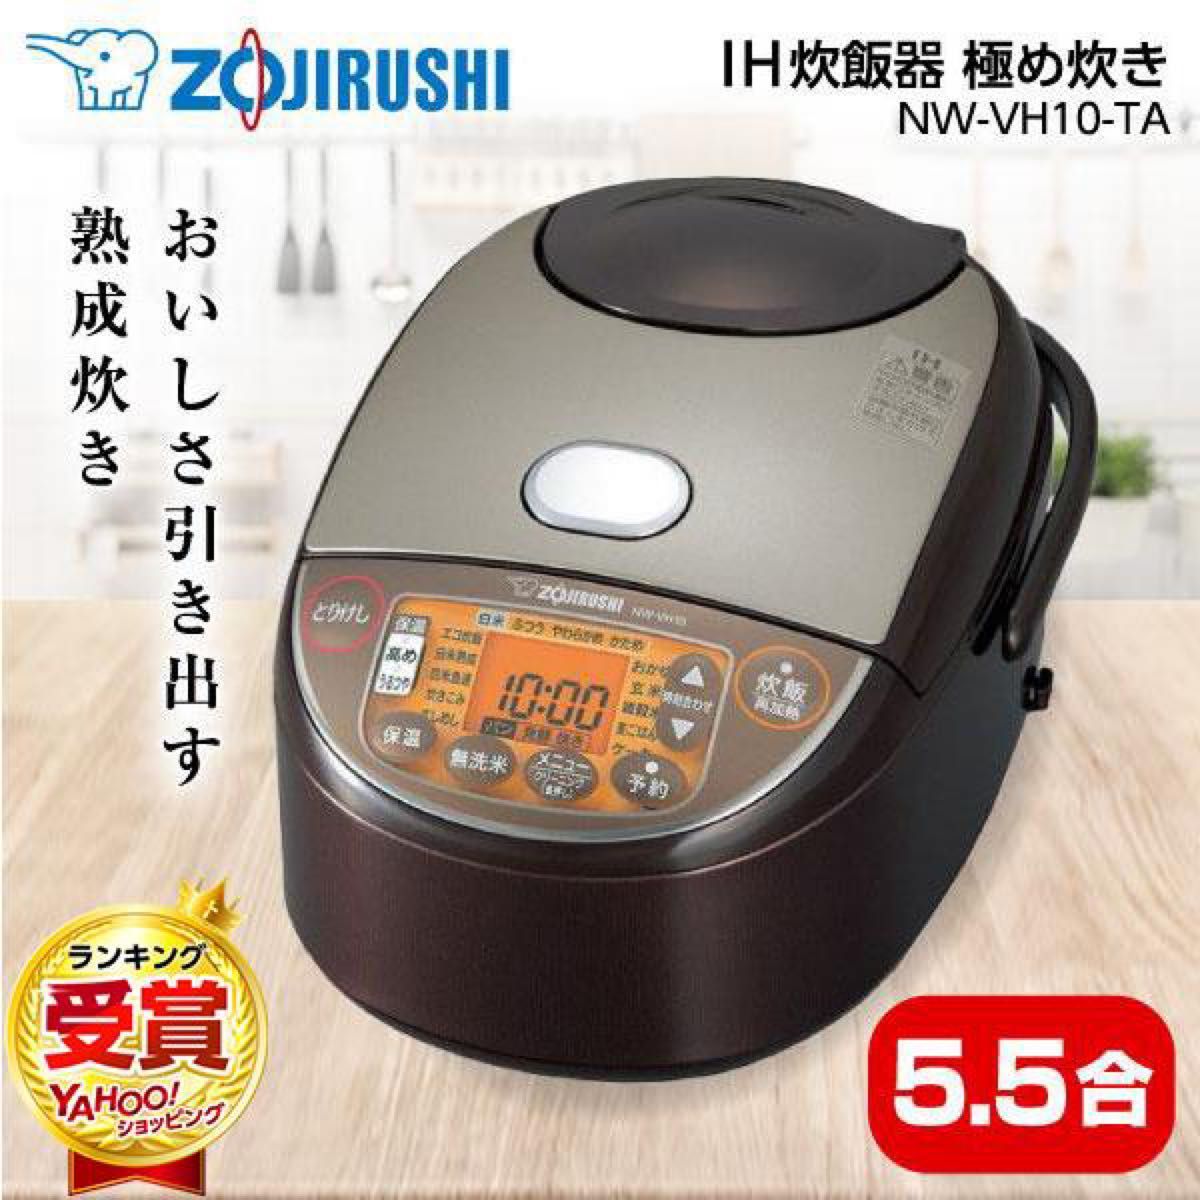 象印 極め炊き NW-JU10-WA 圧力IH炊飯器 5.5合炊き-